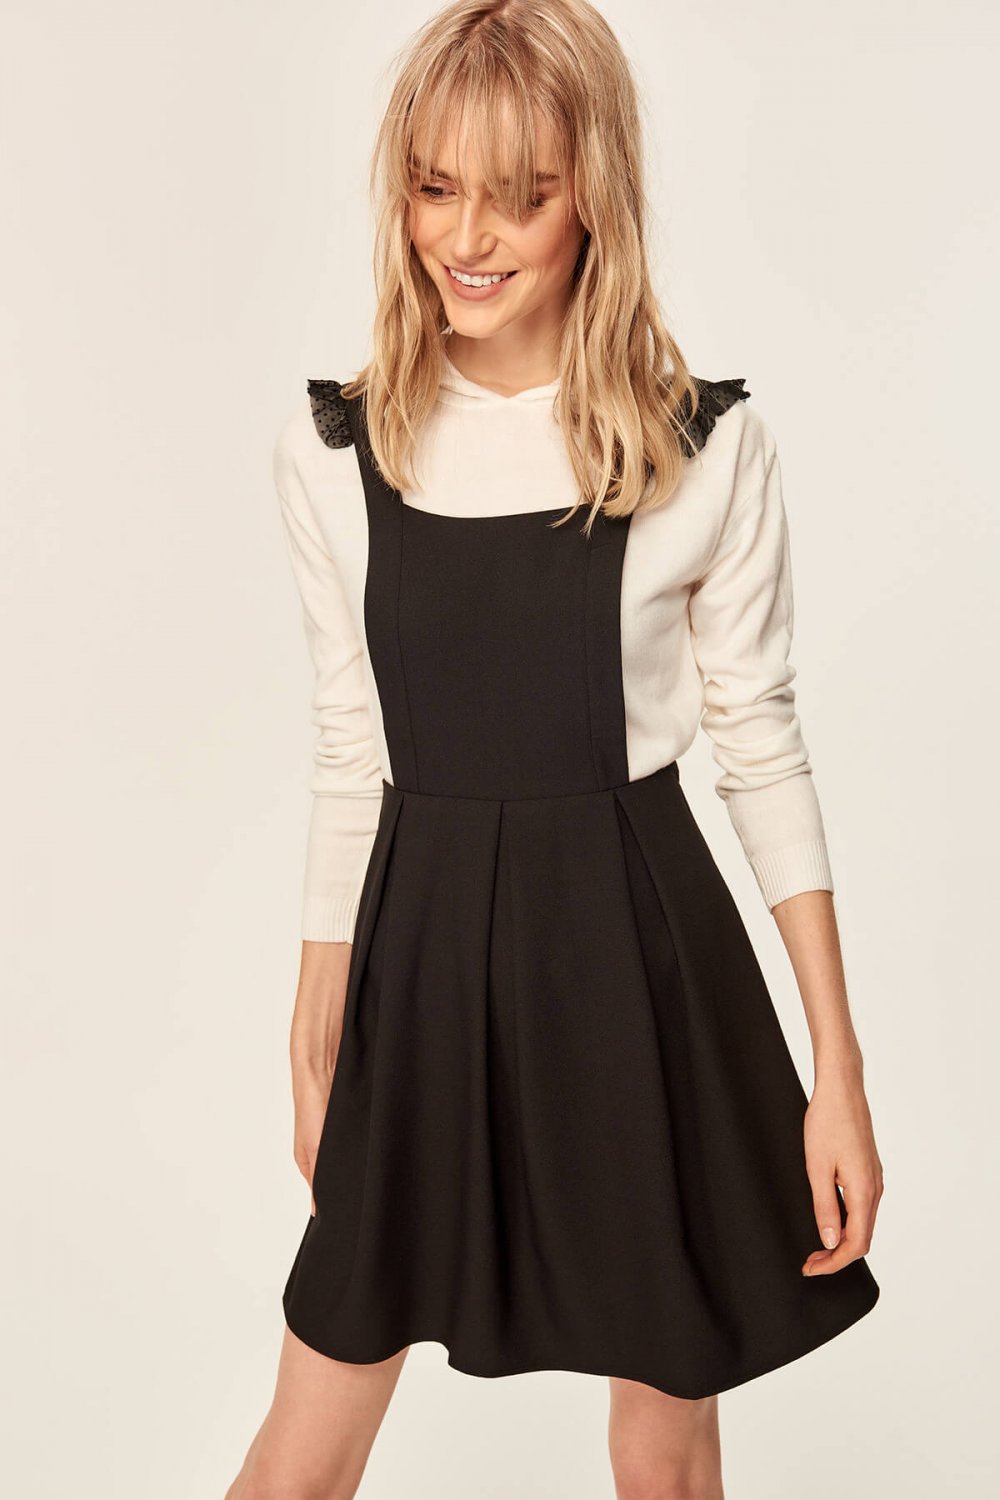 matris Mount Bank taşıyıcı  Trendyolmilla Askılı Siyah Jile Mini Elbise | ElbiseBul